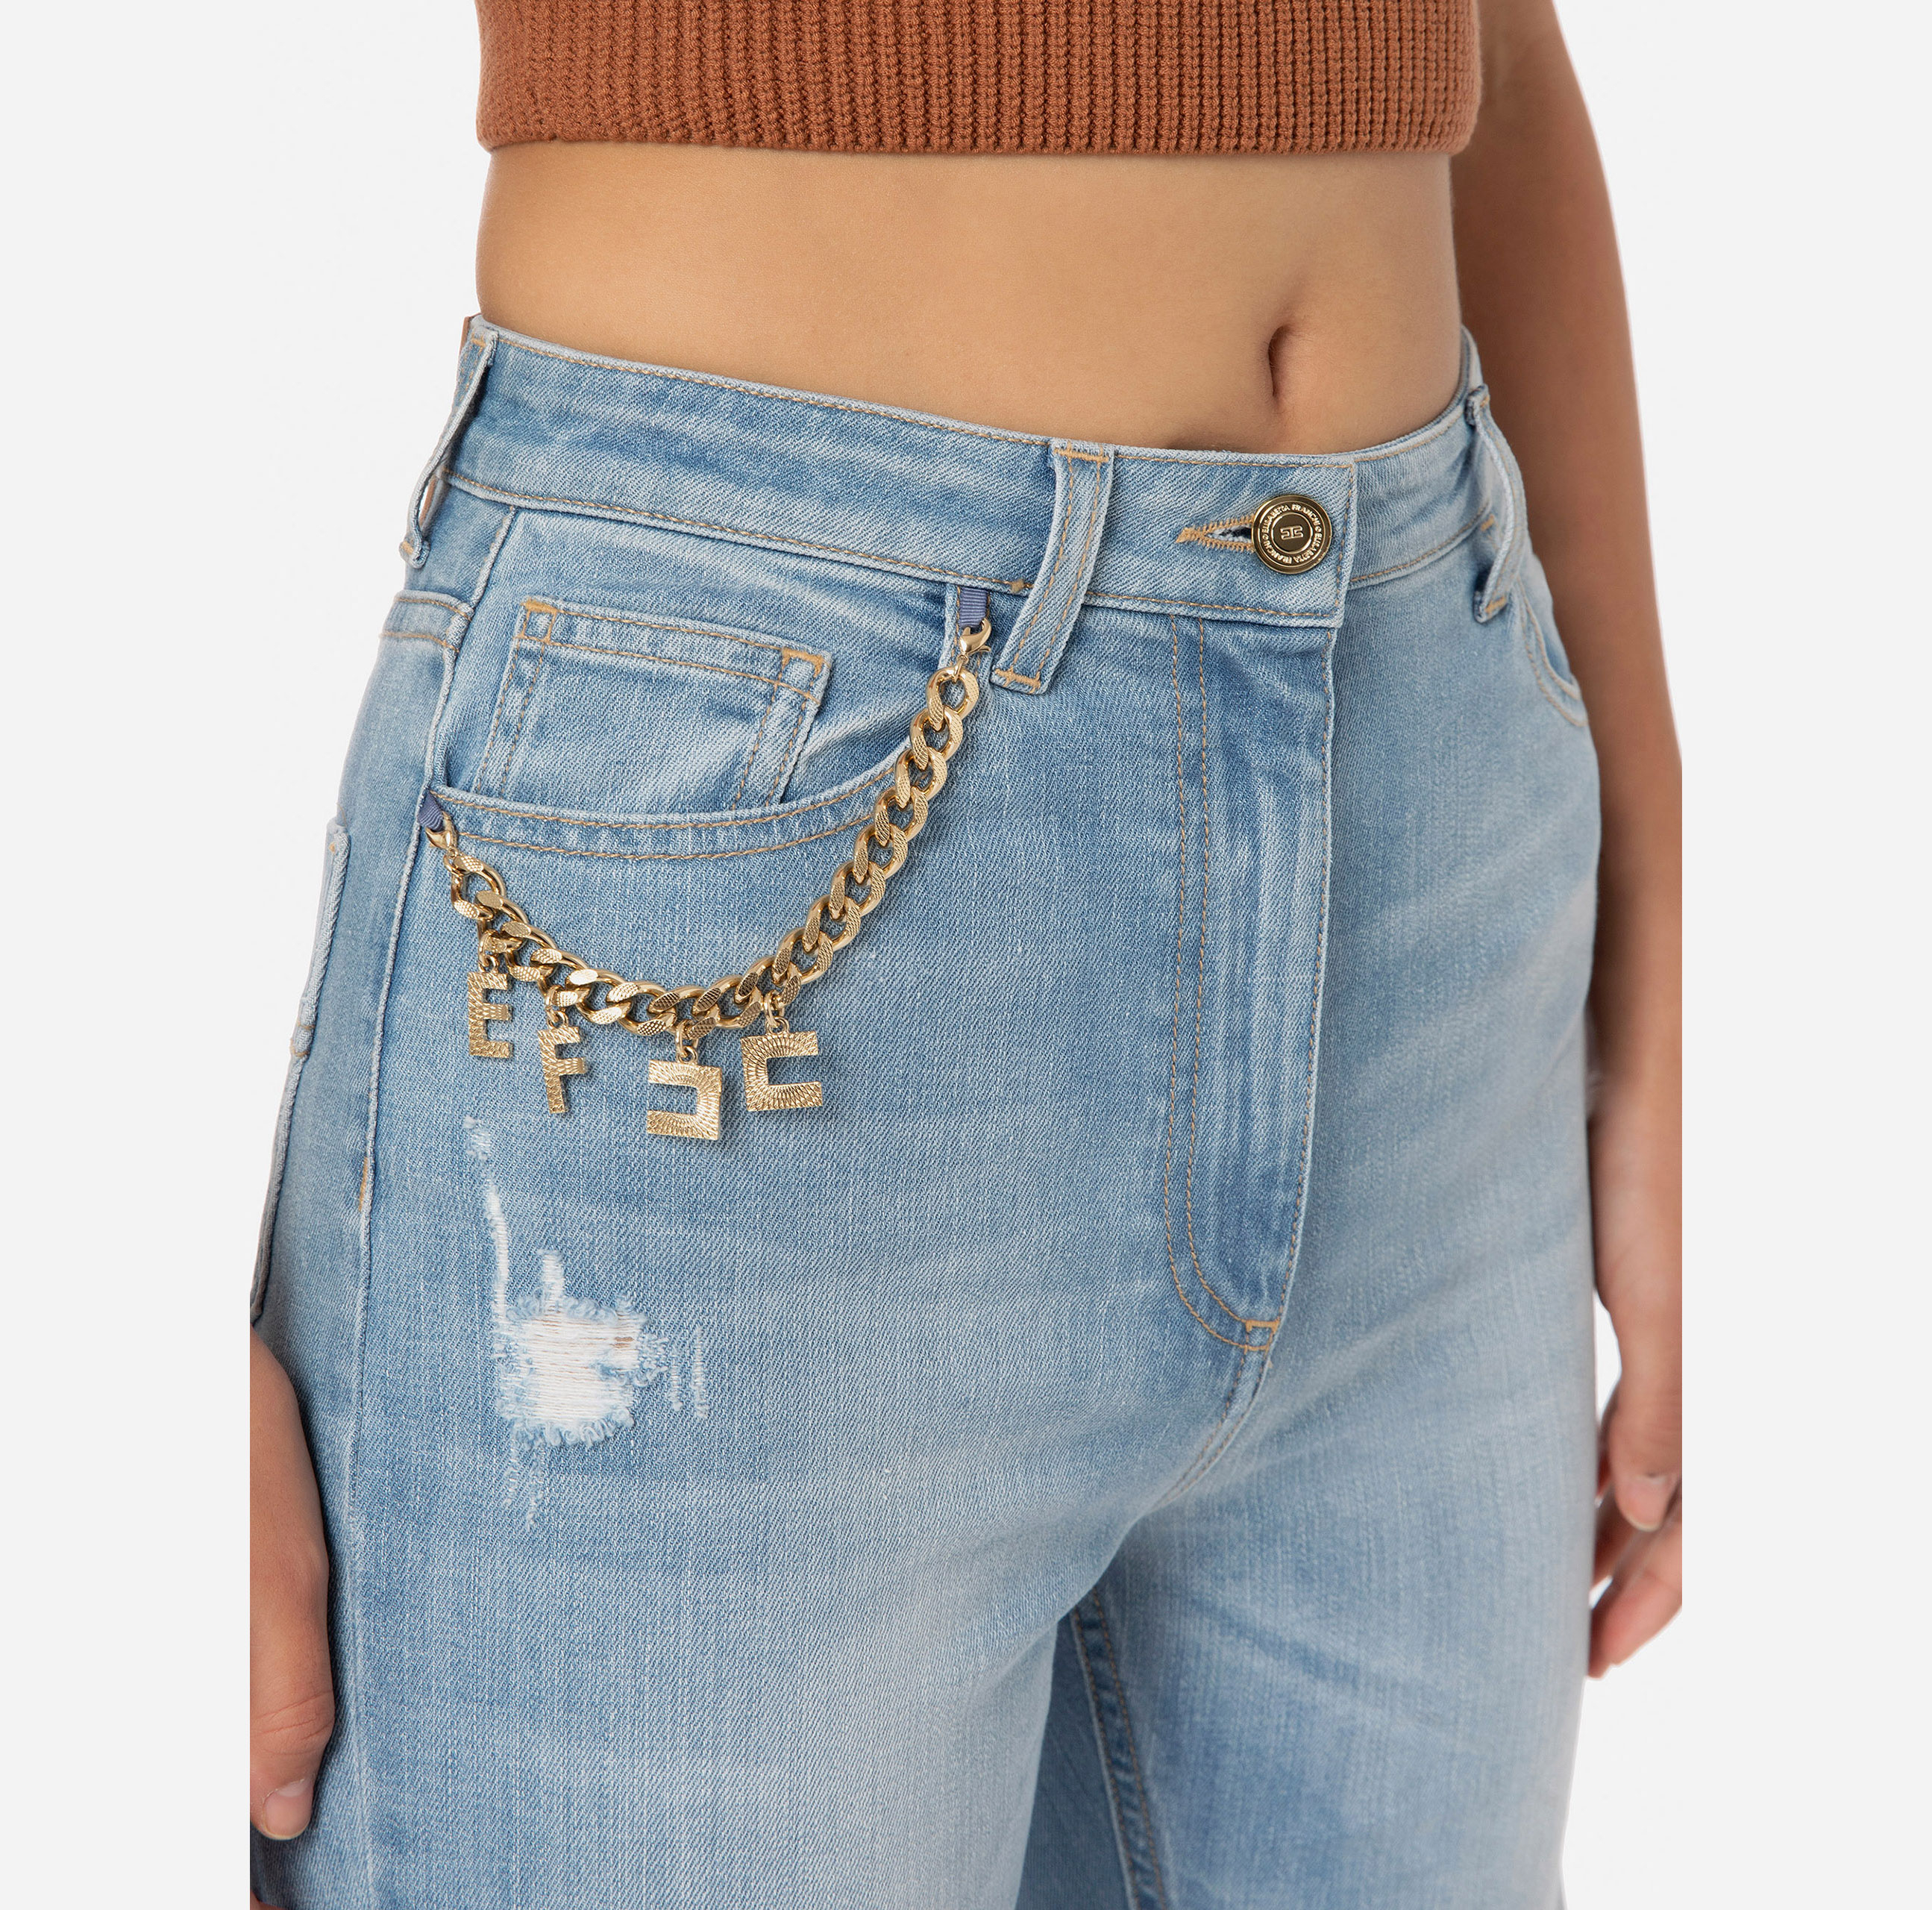 Five-pocket jeans - Elisabetta Franchi